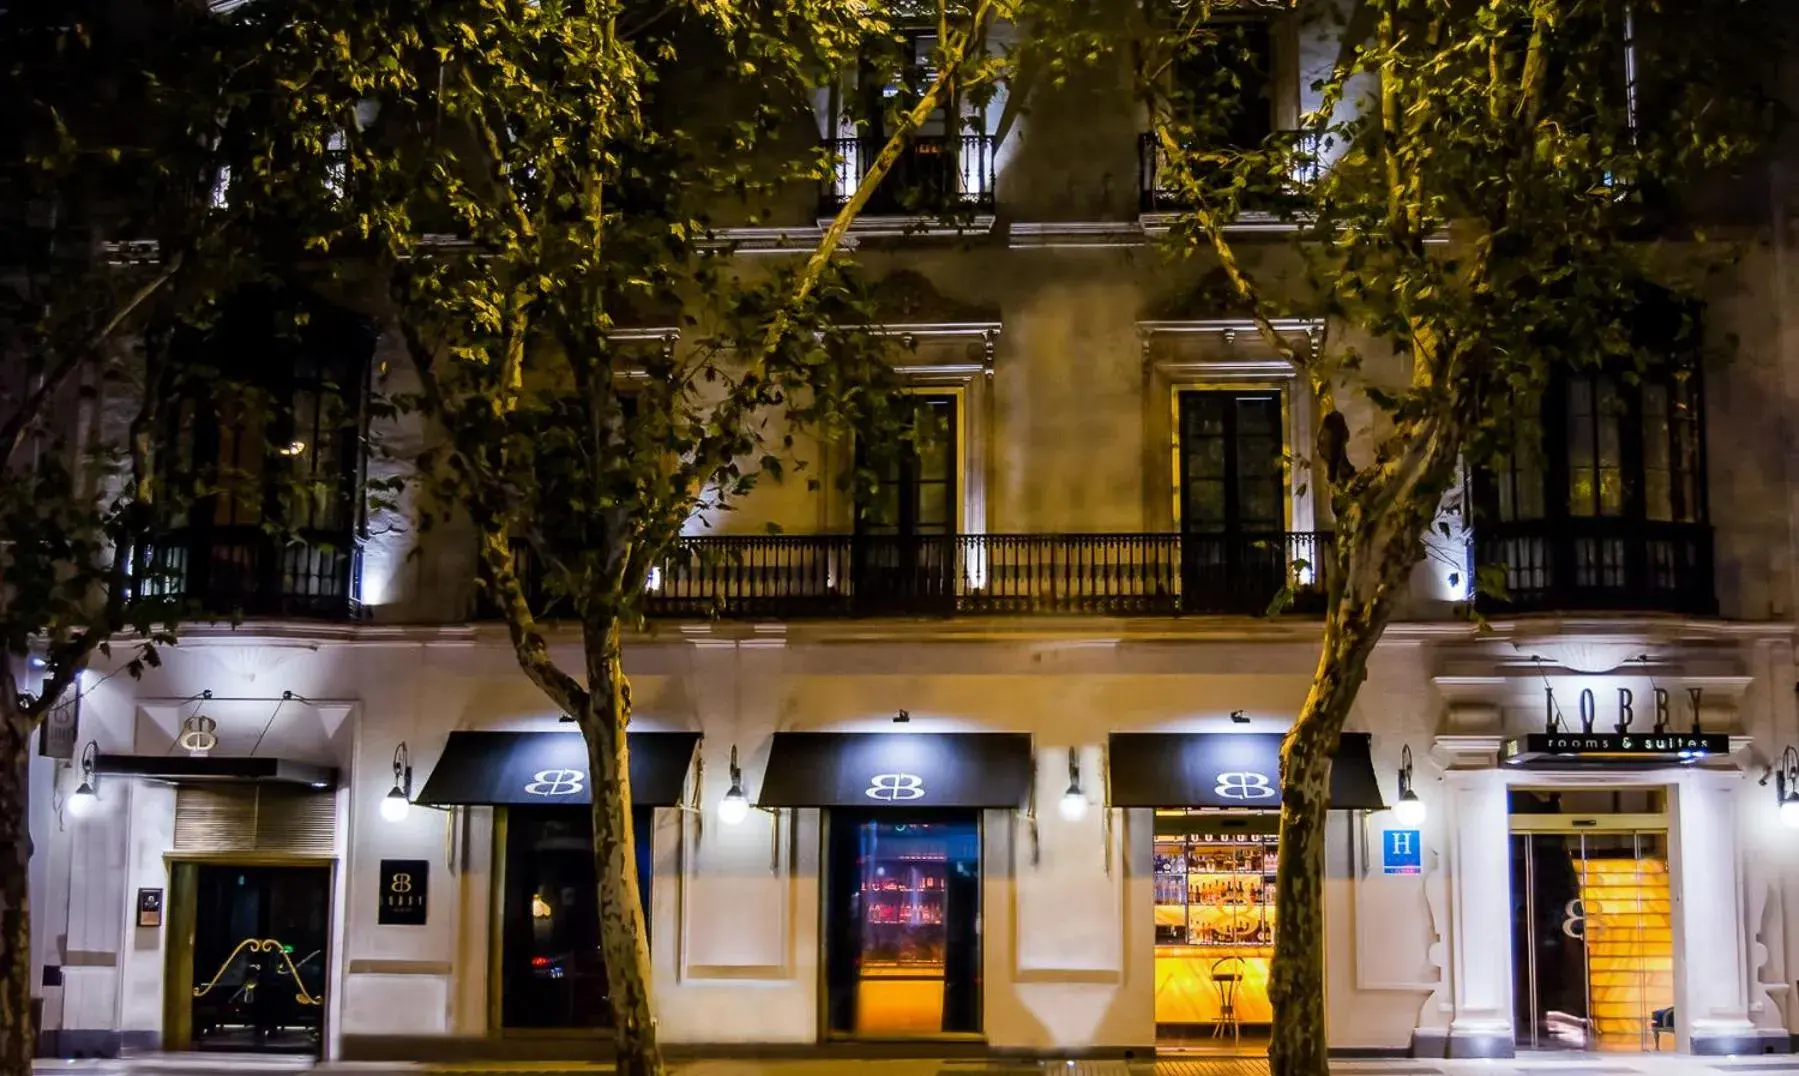 Facade/entrance, Property Building in Hotel Lobby Room Sevilla